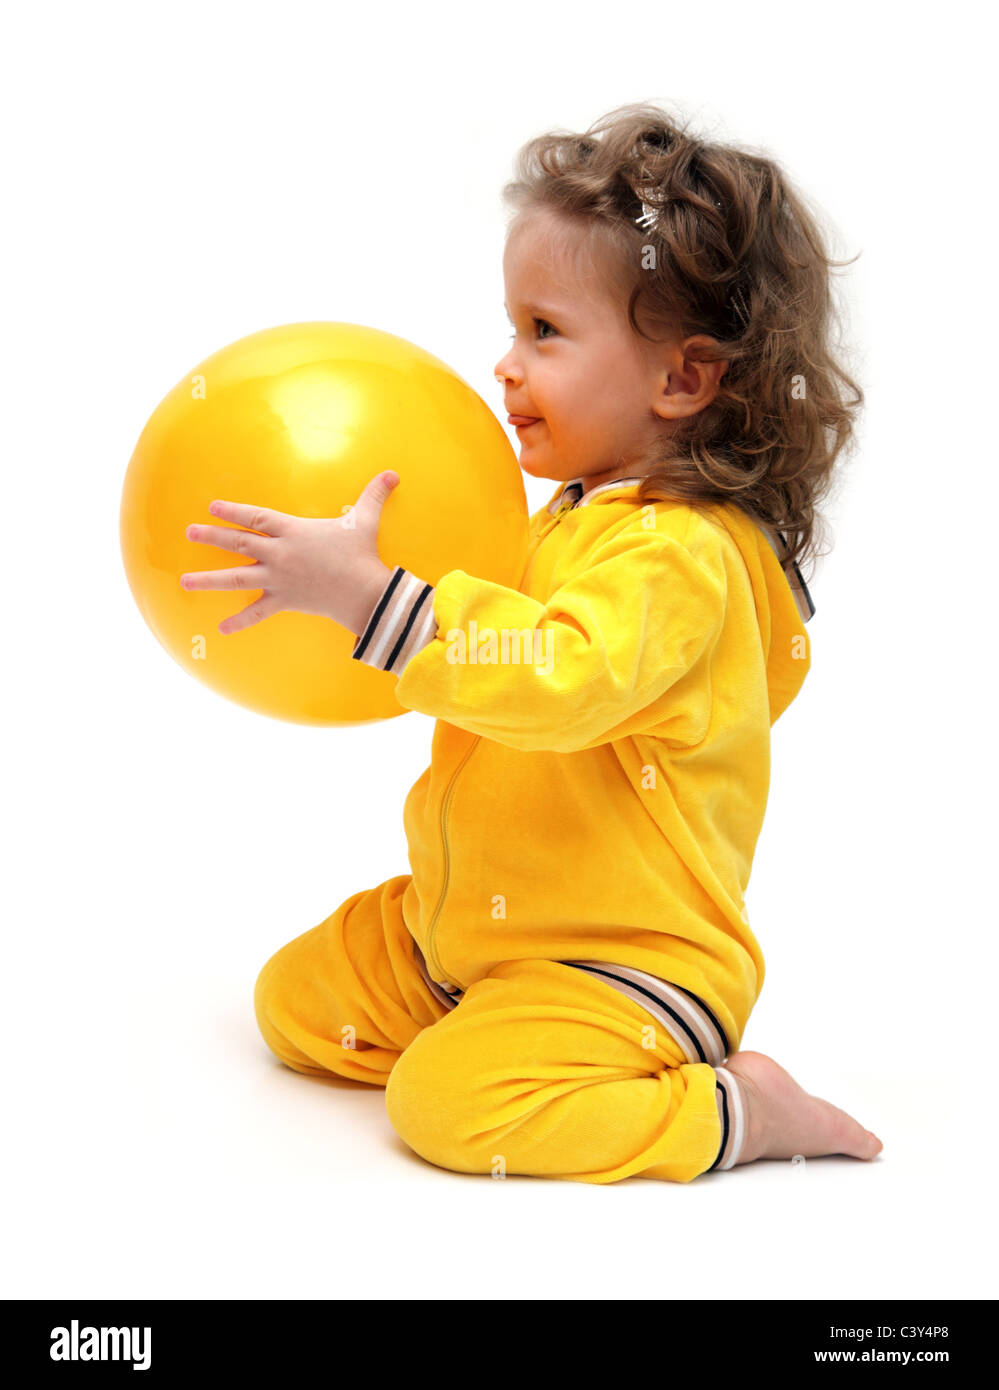 Carino bambina in giallo giocando con sfera Foto Stock